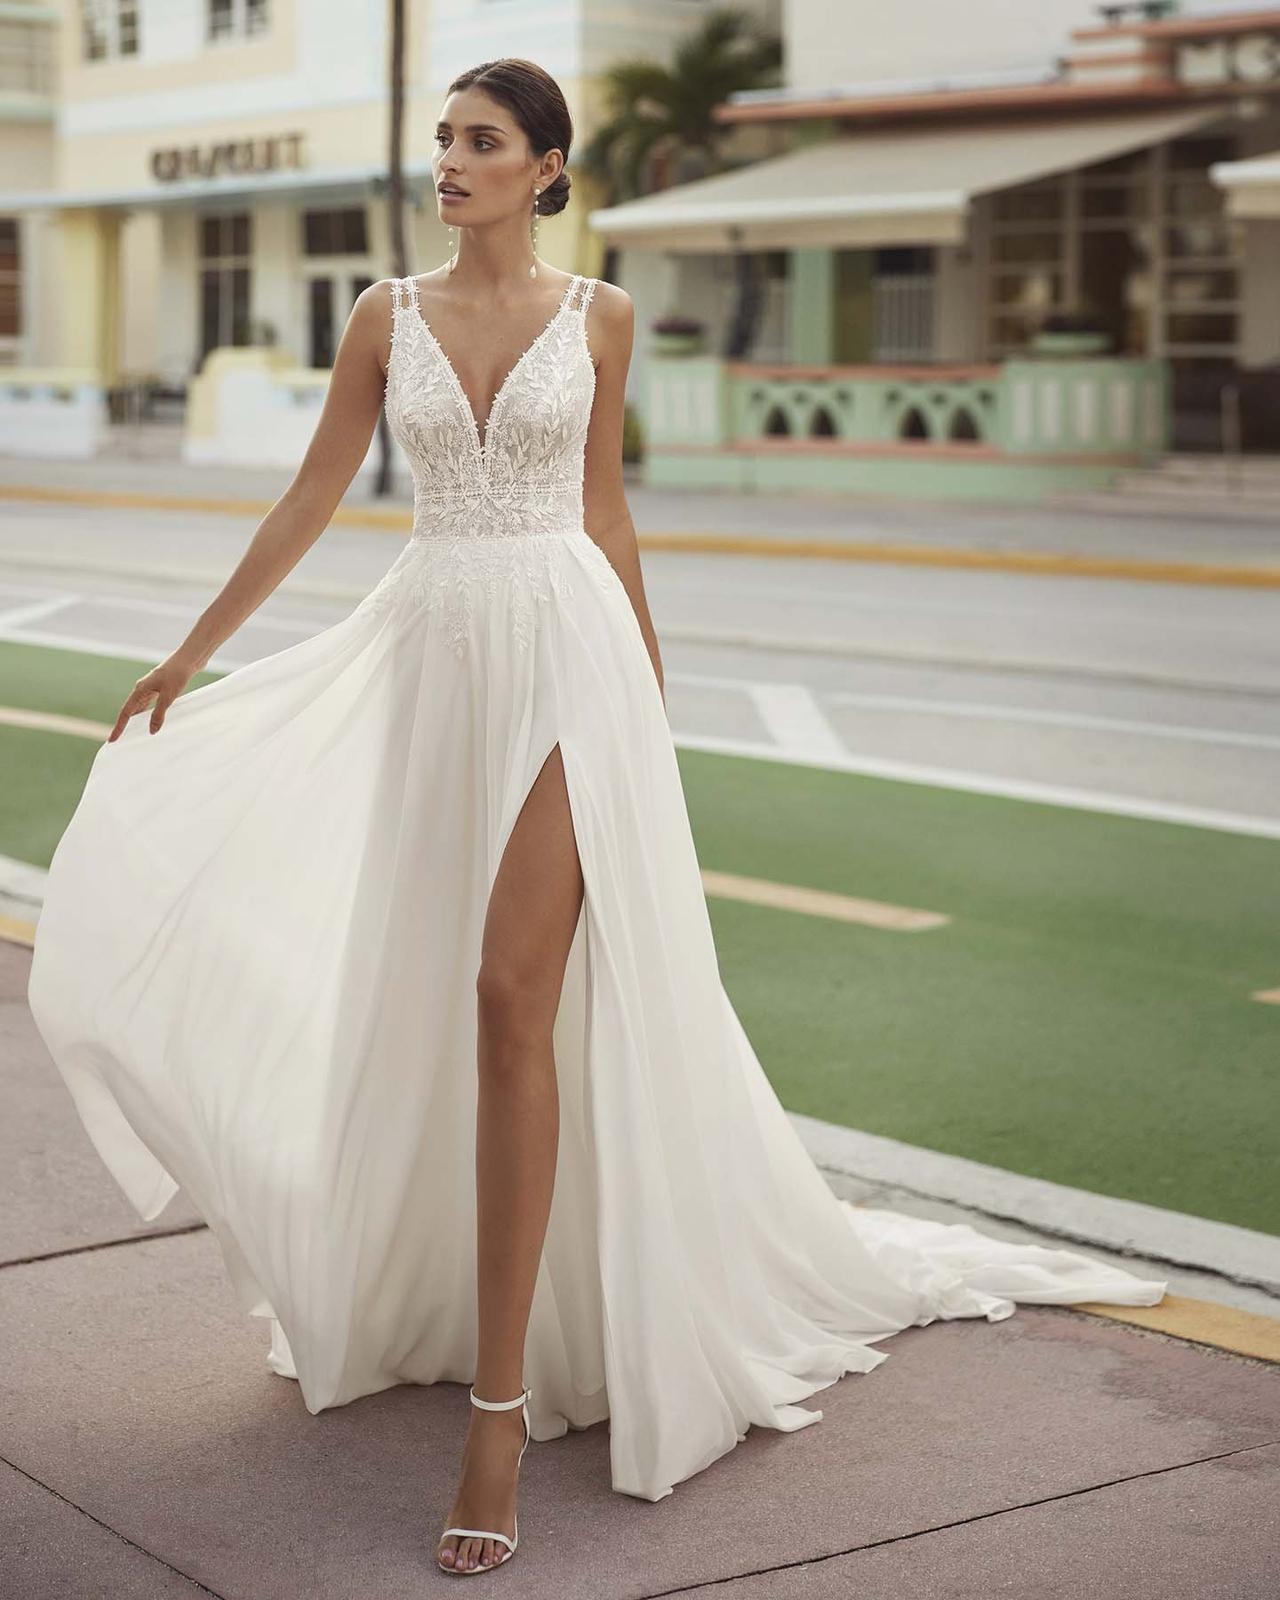 Vestidos de Noiva em Crochê - Inspire se Nestes Lindos Modelos